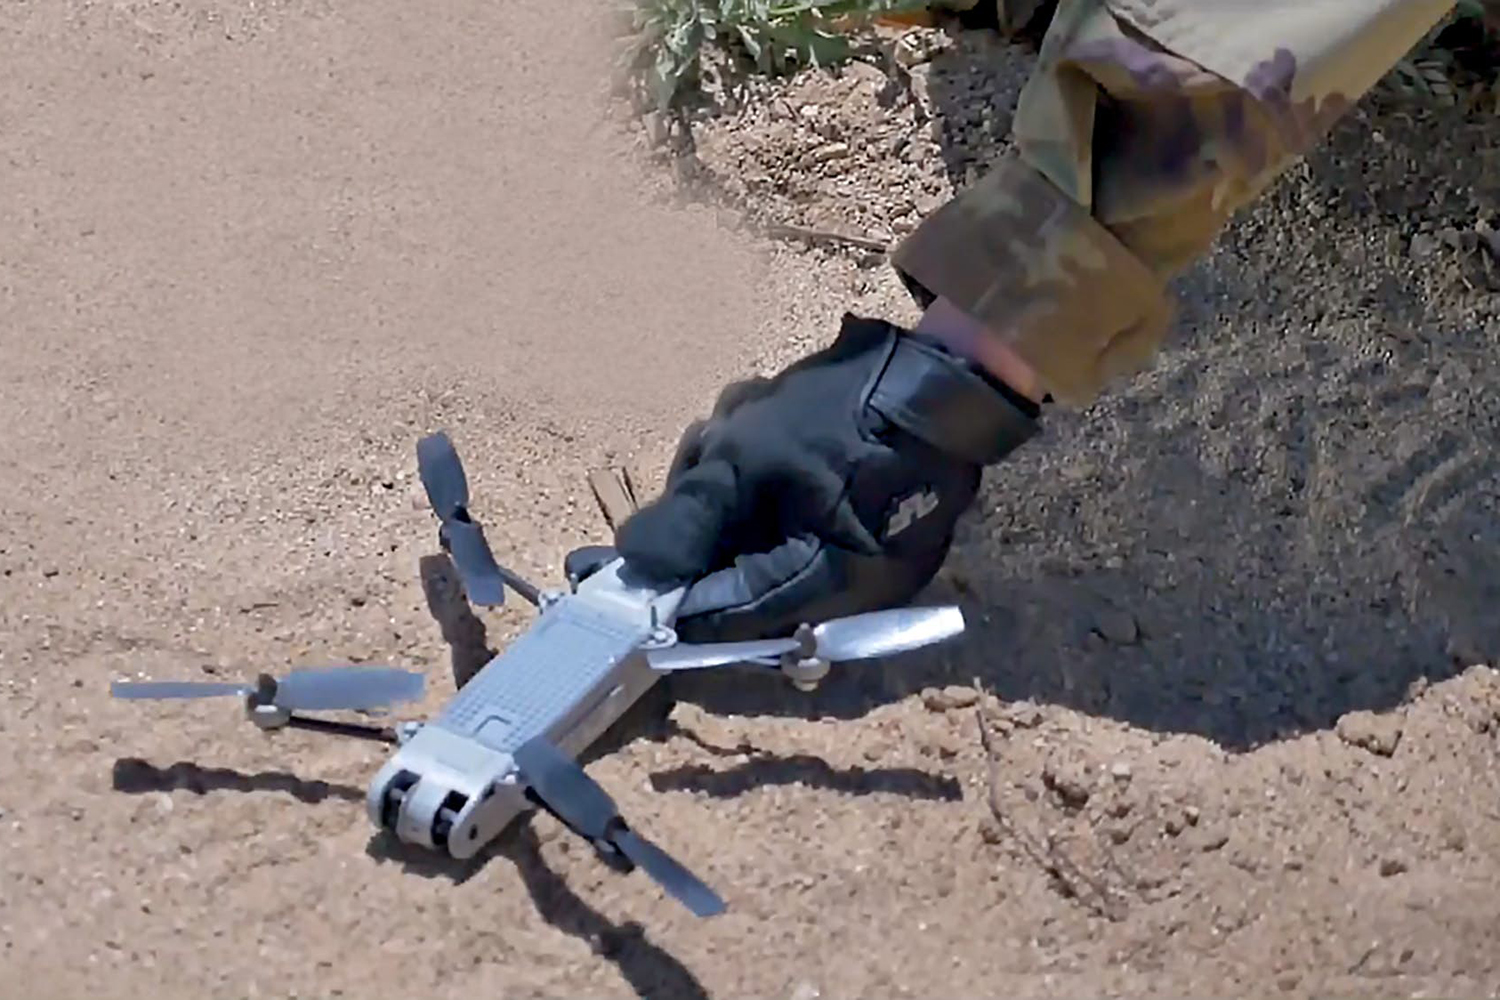 snipe nano drone solider aerovironment